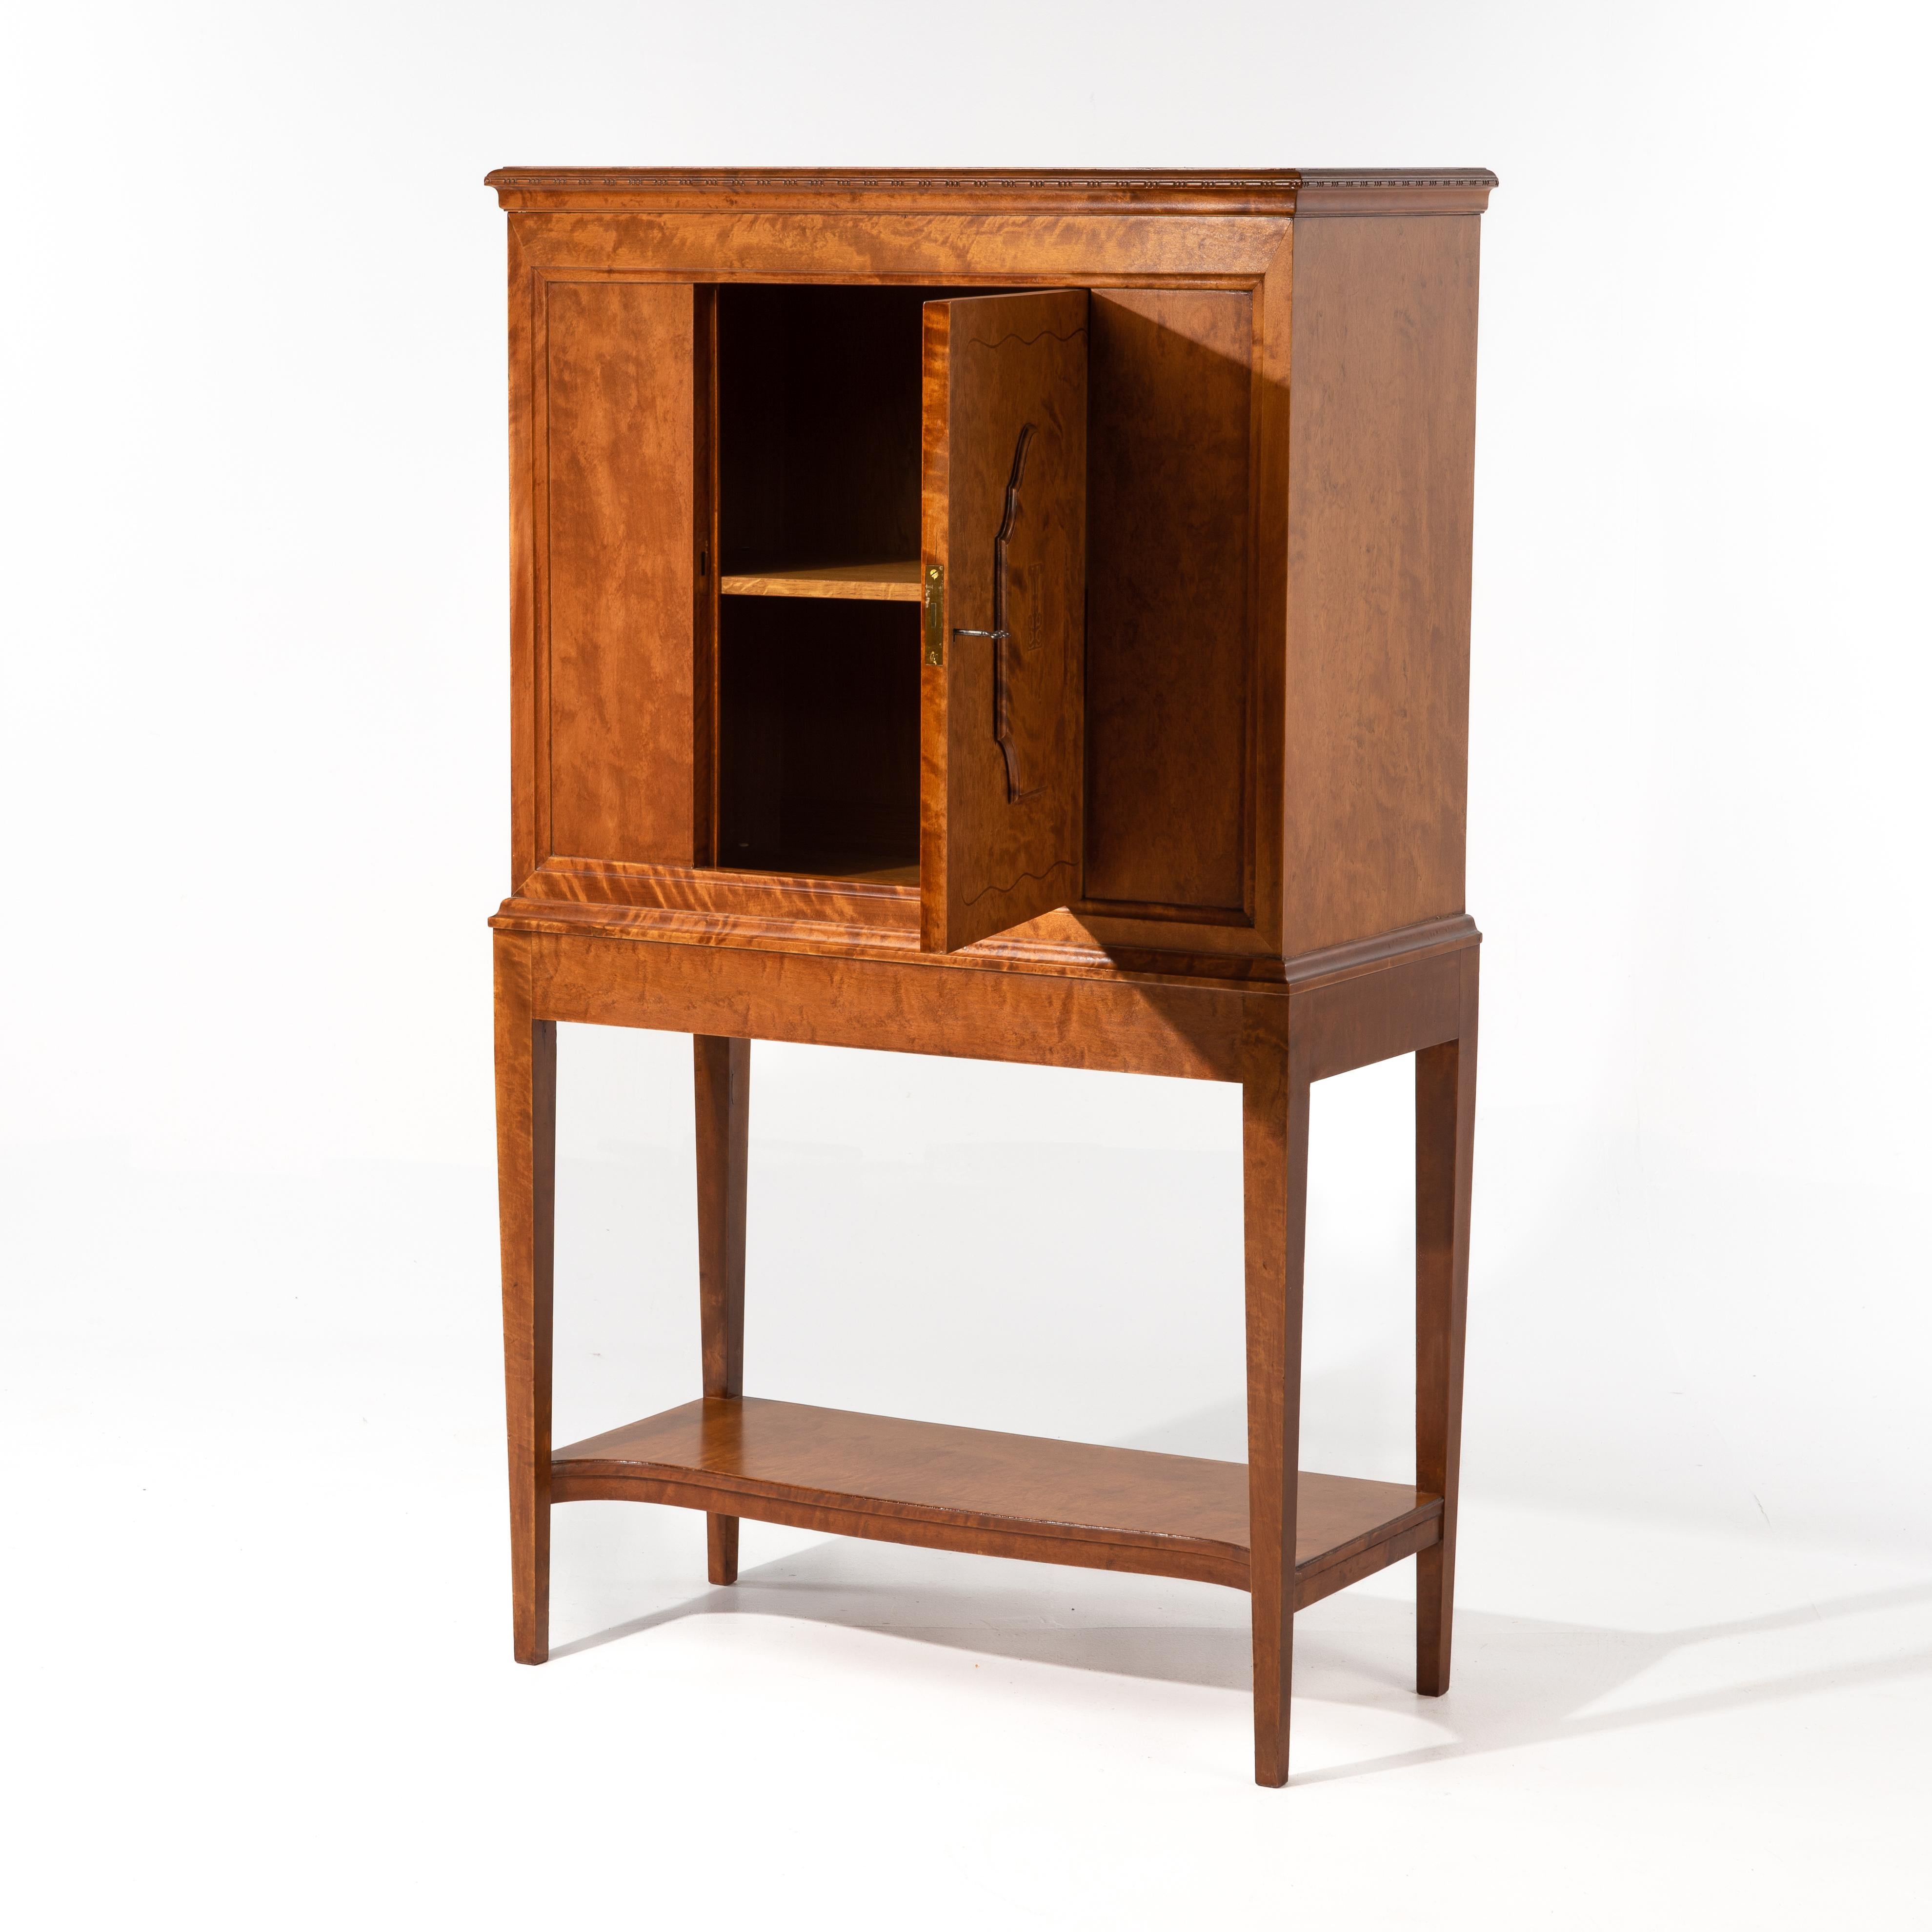 Ce meuble ancien est une œuvre de A. B. Nordiska Kompaniet attribuée à Carl Bergsten, 1918. Bouleau figuré avec incrustation. L'ouverture de la porte est de 12,5